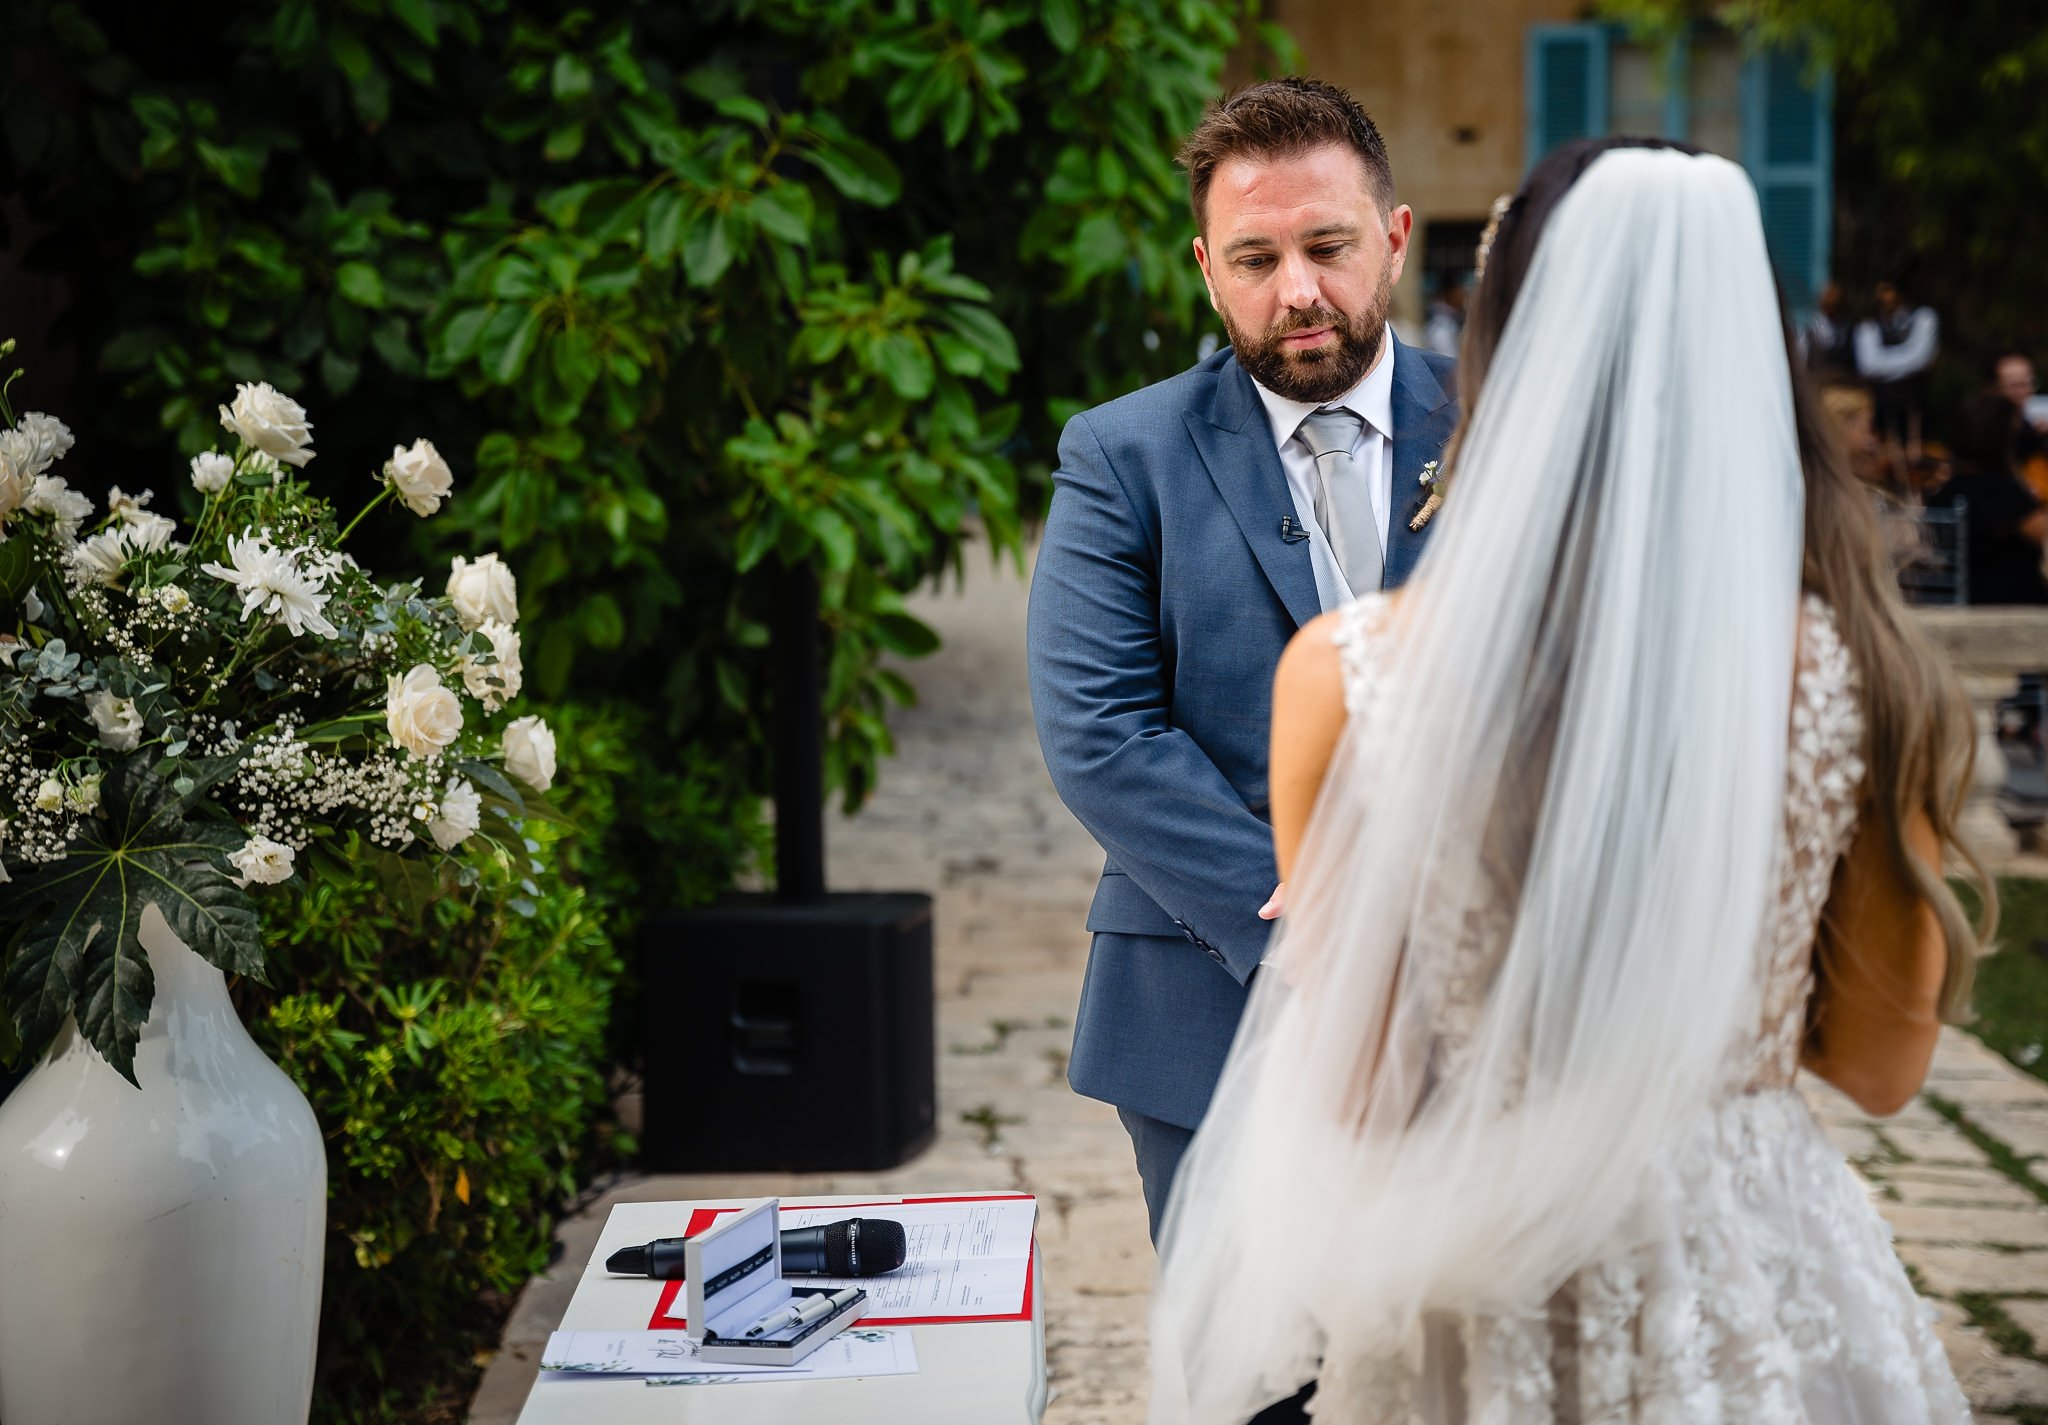 Debbie & Phil's Wedding at Villa Bologna_0050.jpg